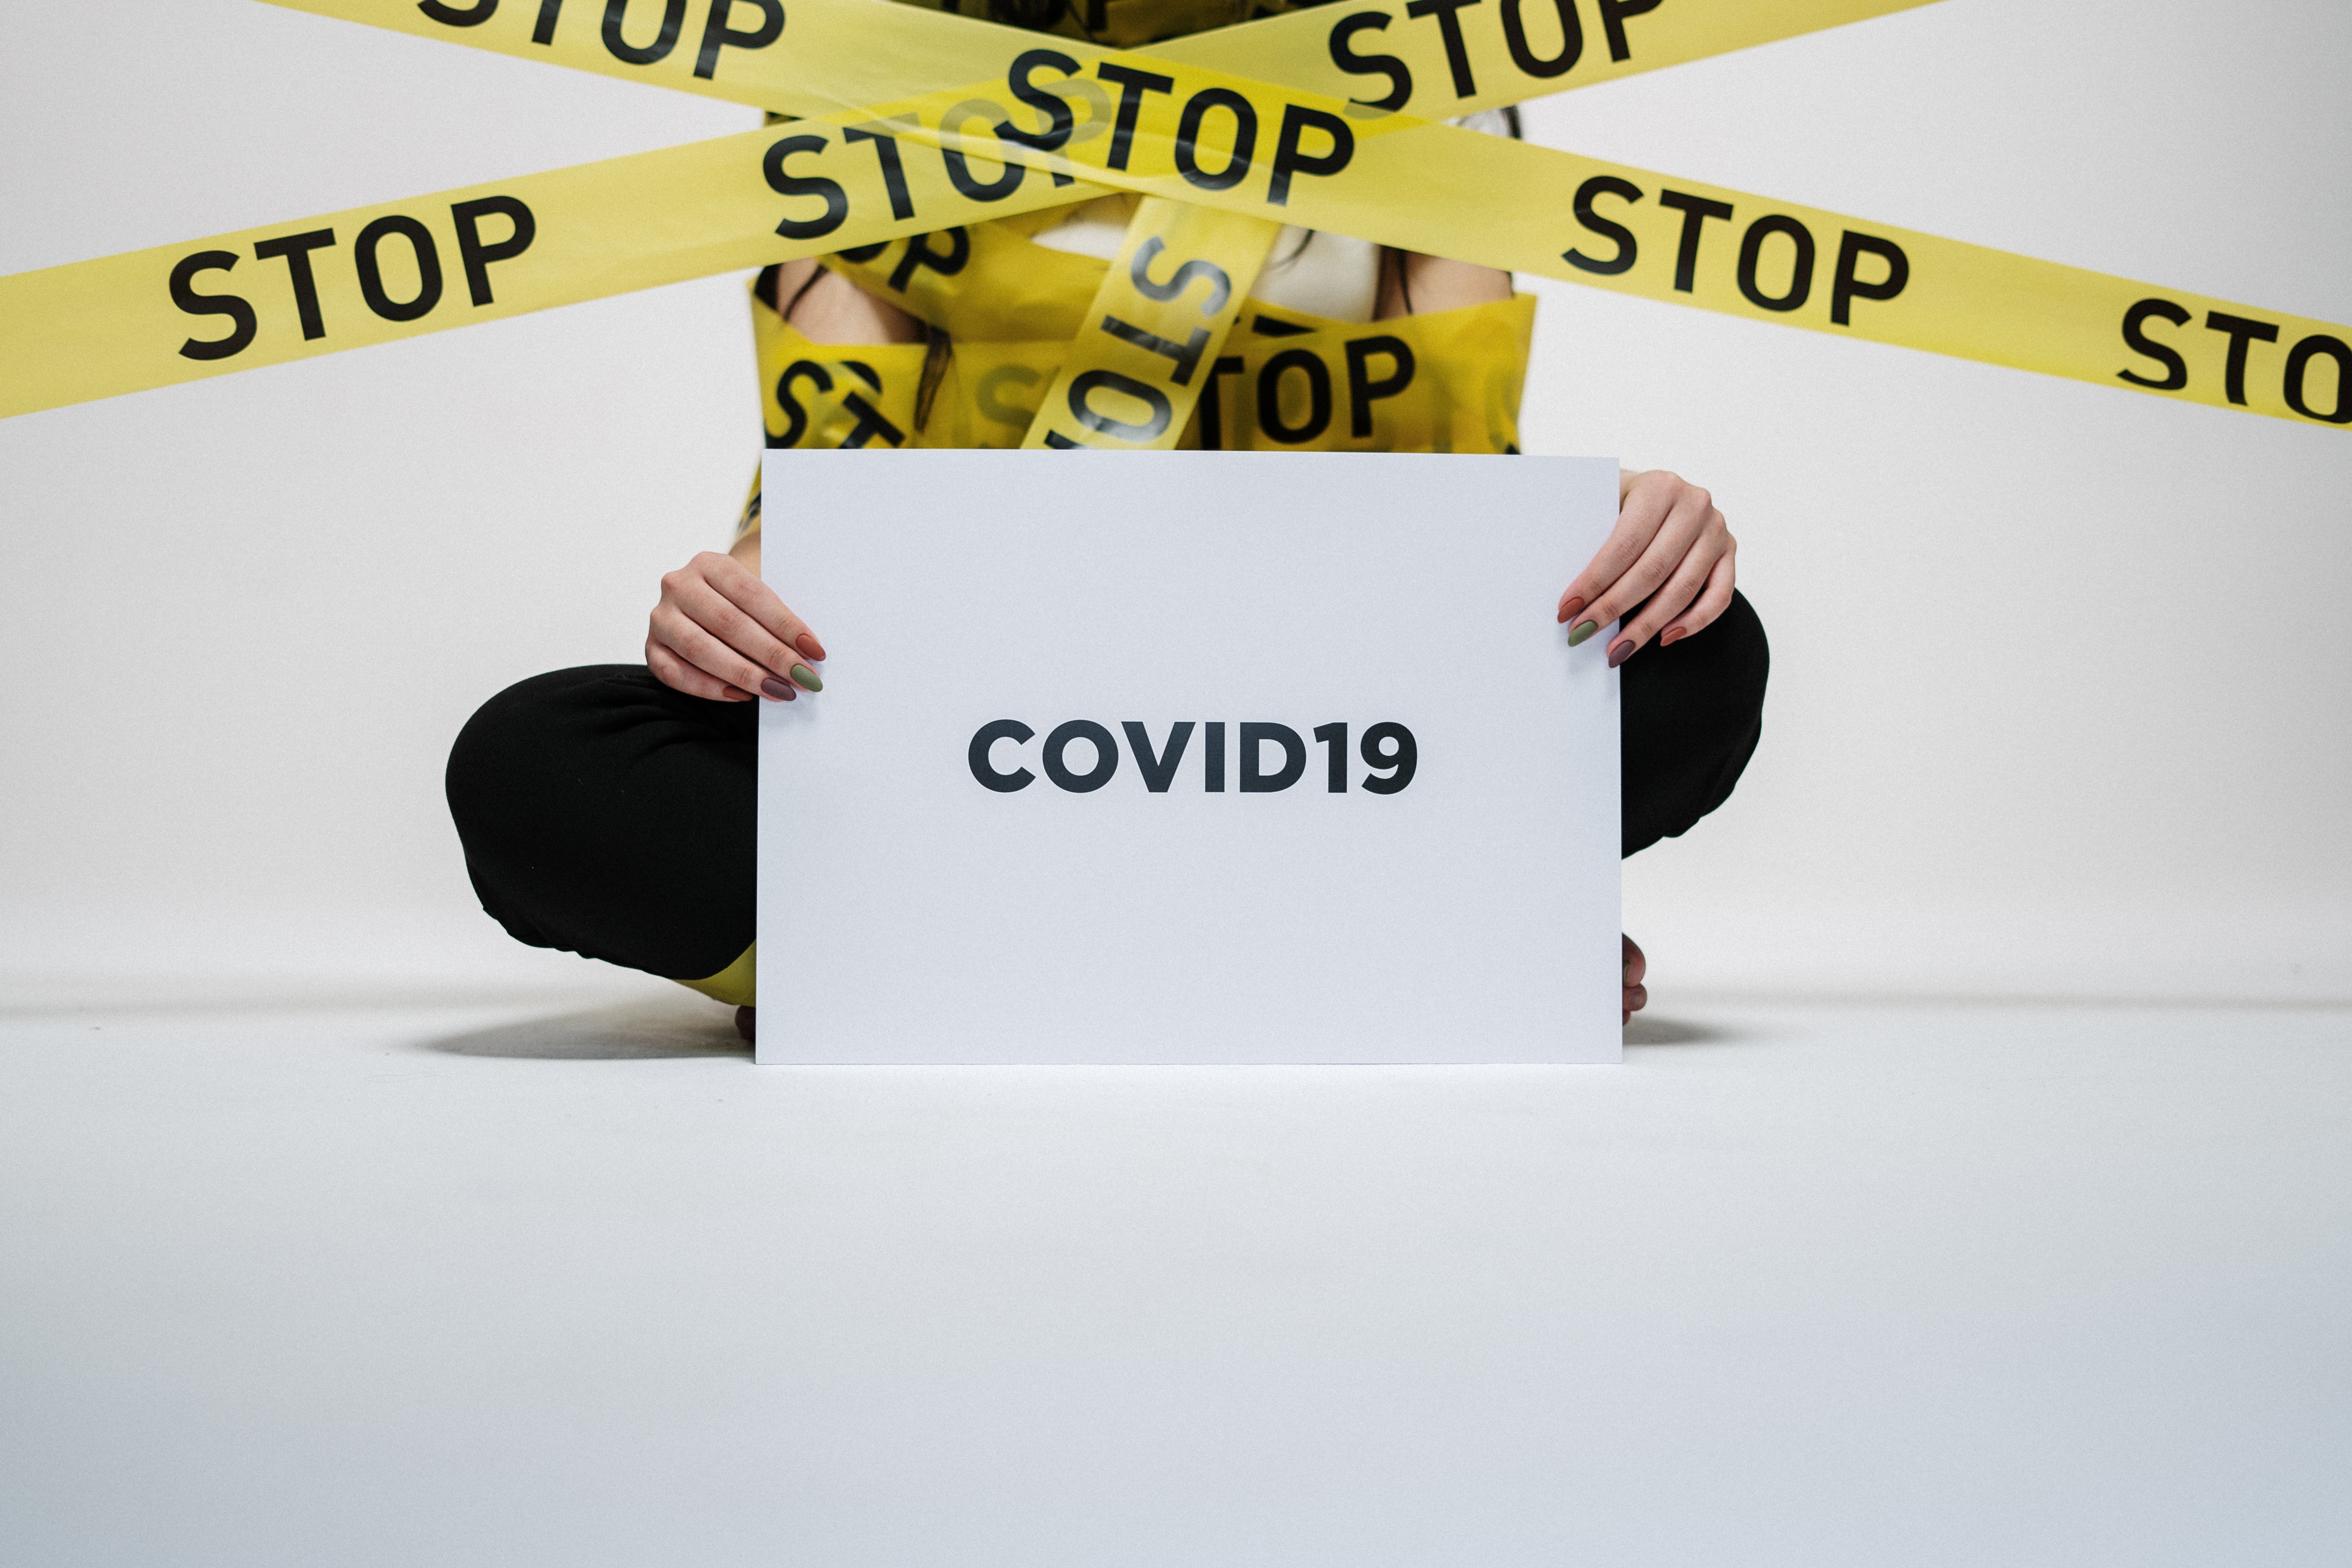 Stop Covid